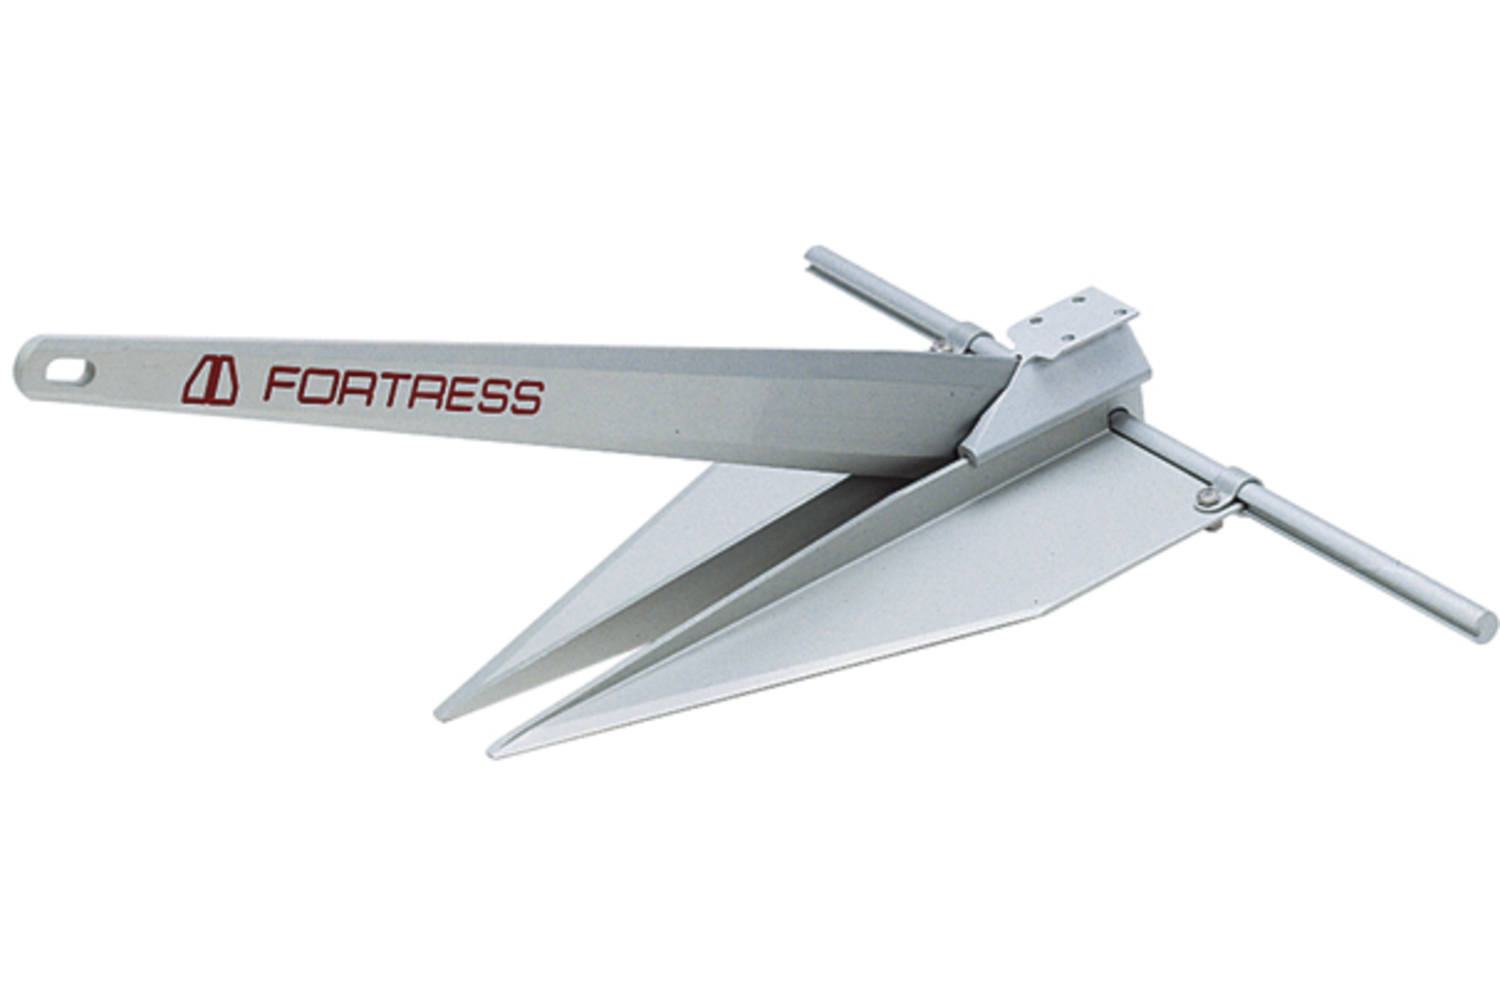 Fortress Anker FX37 - 10,6kg